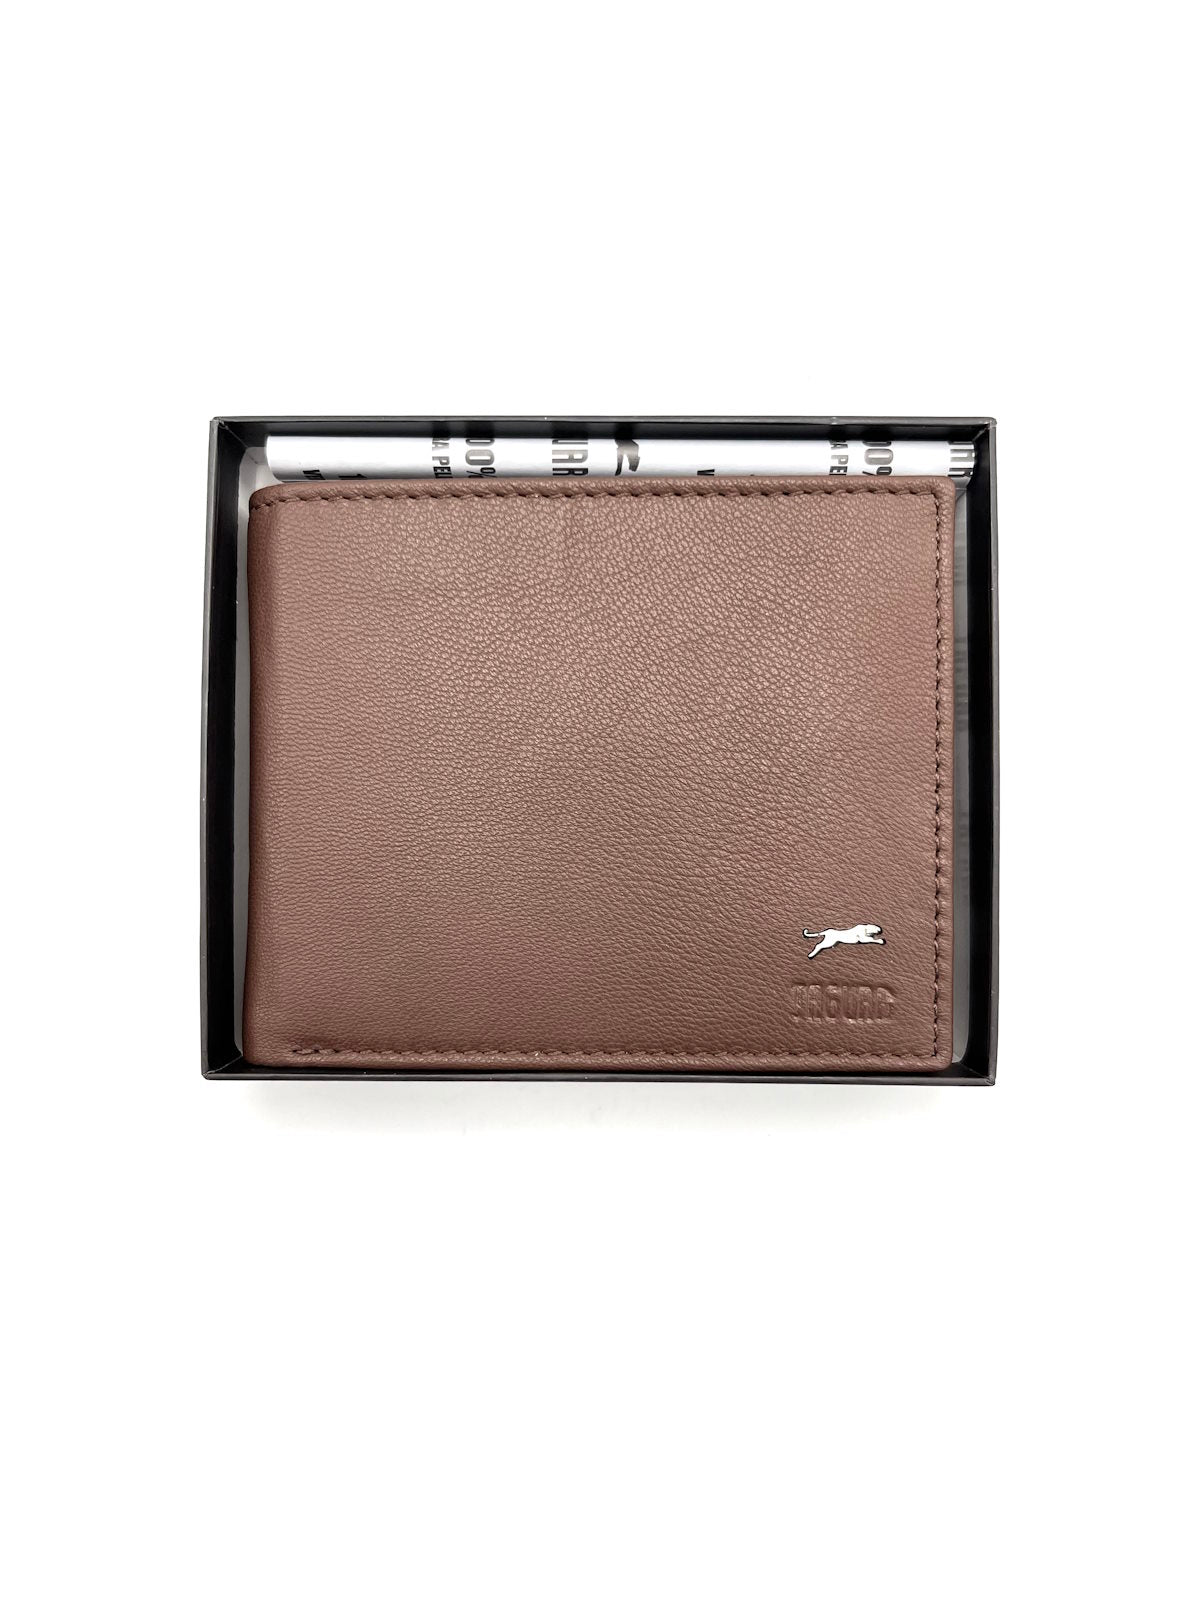 Genuine leather wallet, Jaguar, for men, art. PF701-9